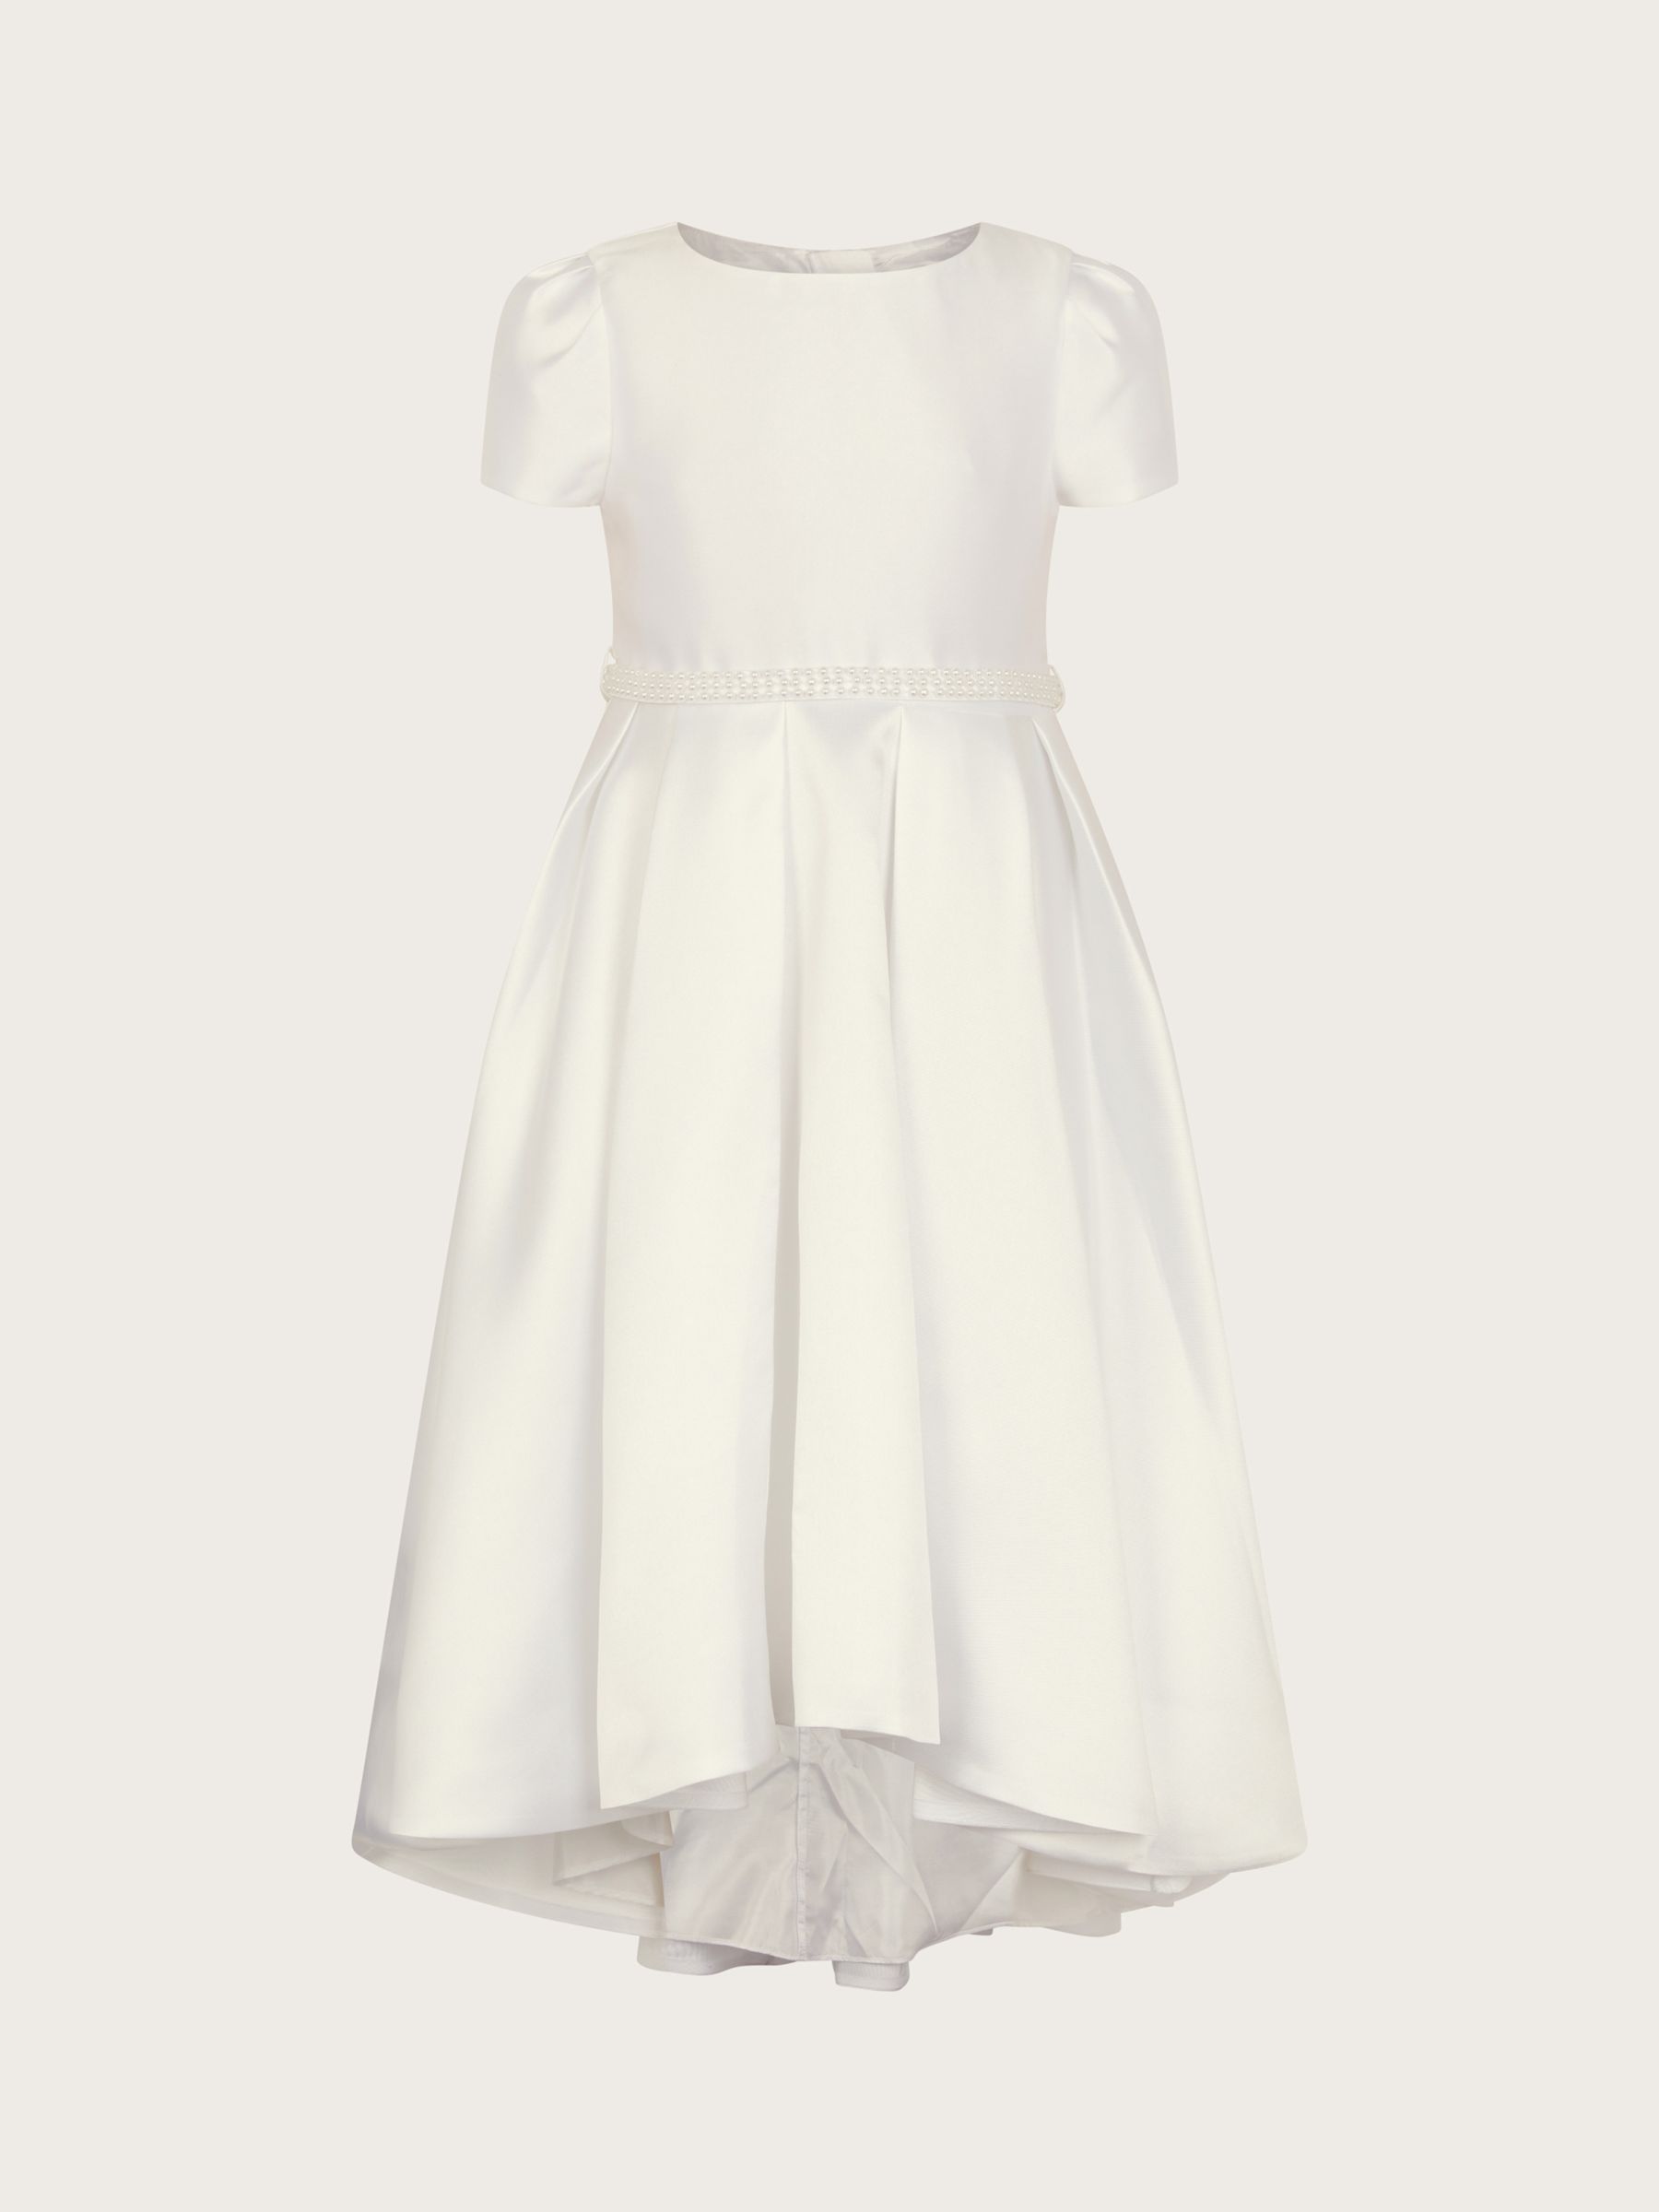 Monsoon Kids' Pearl Henrietta Dress, White, 3 years